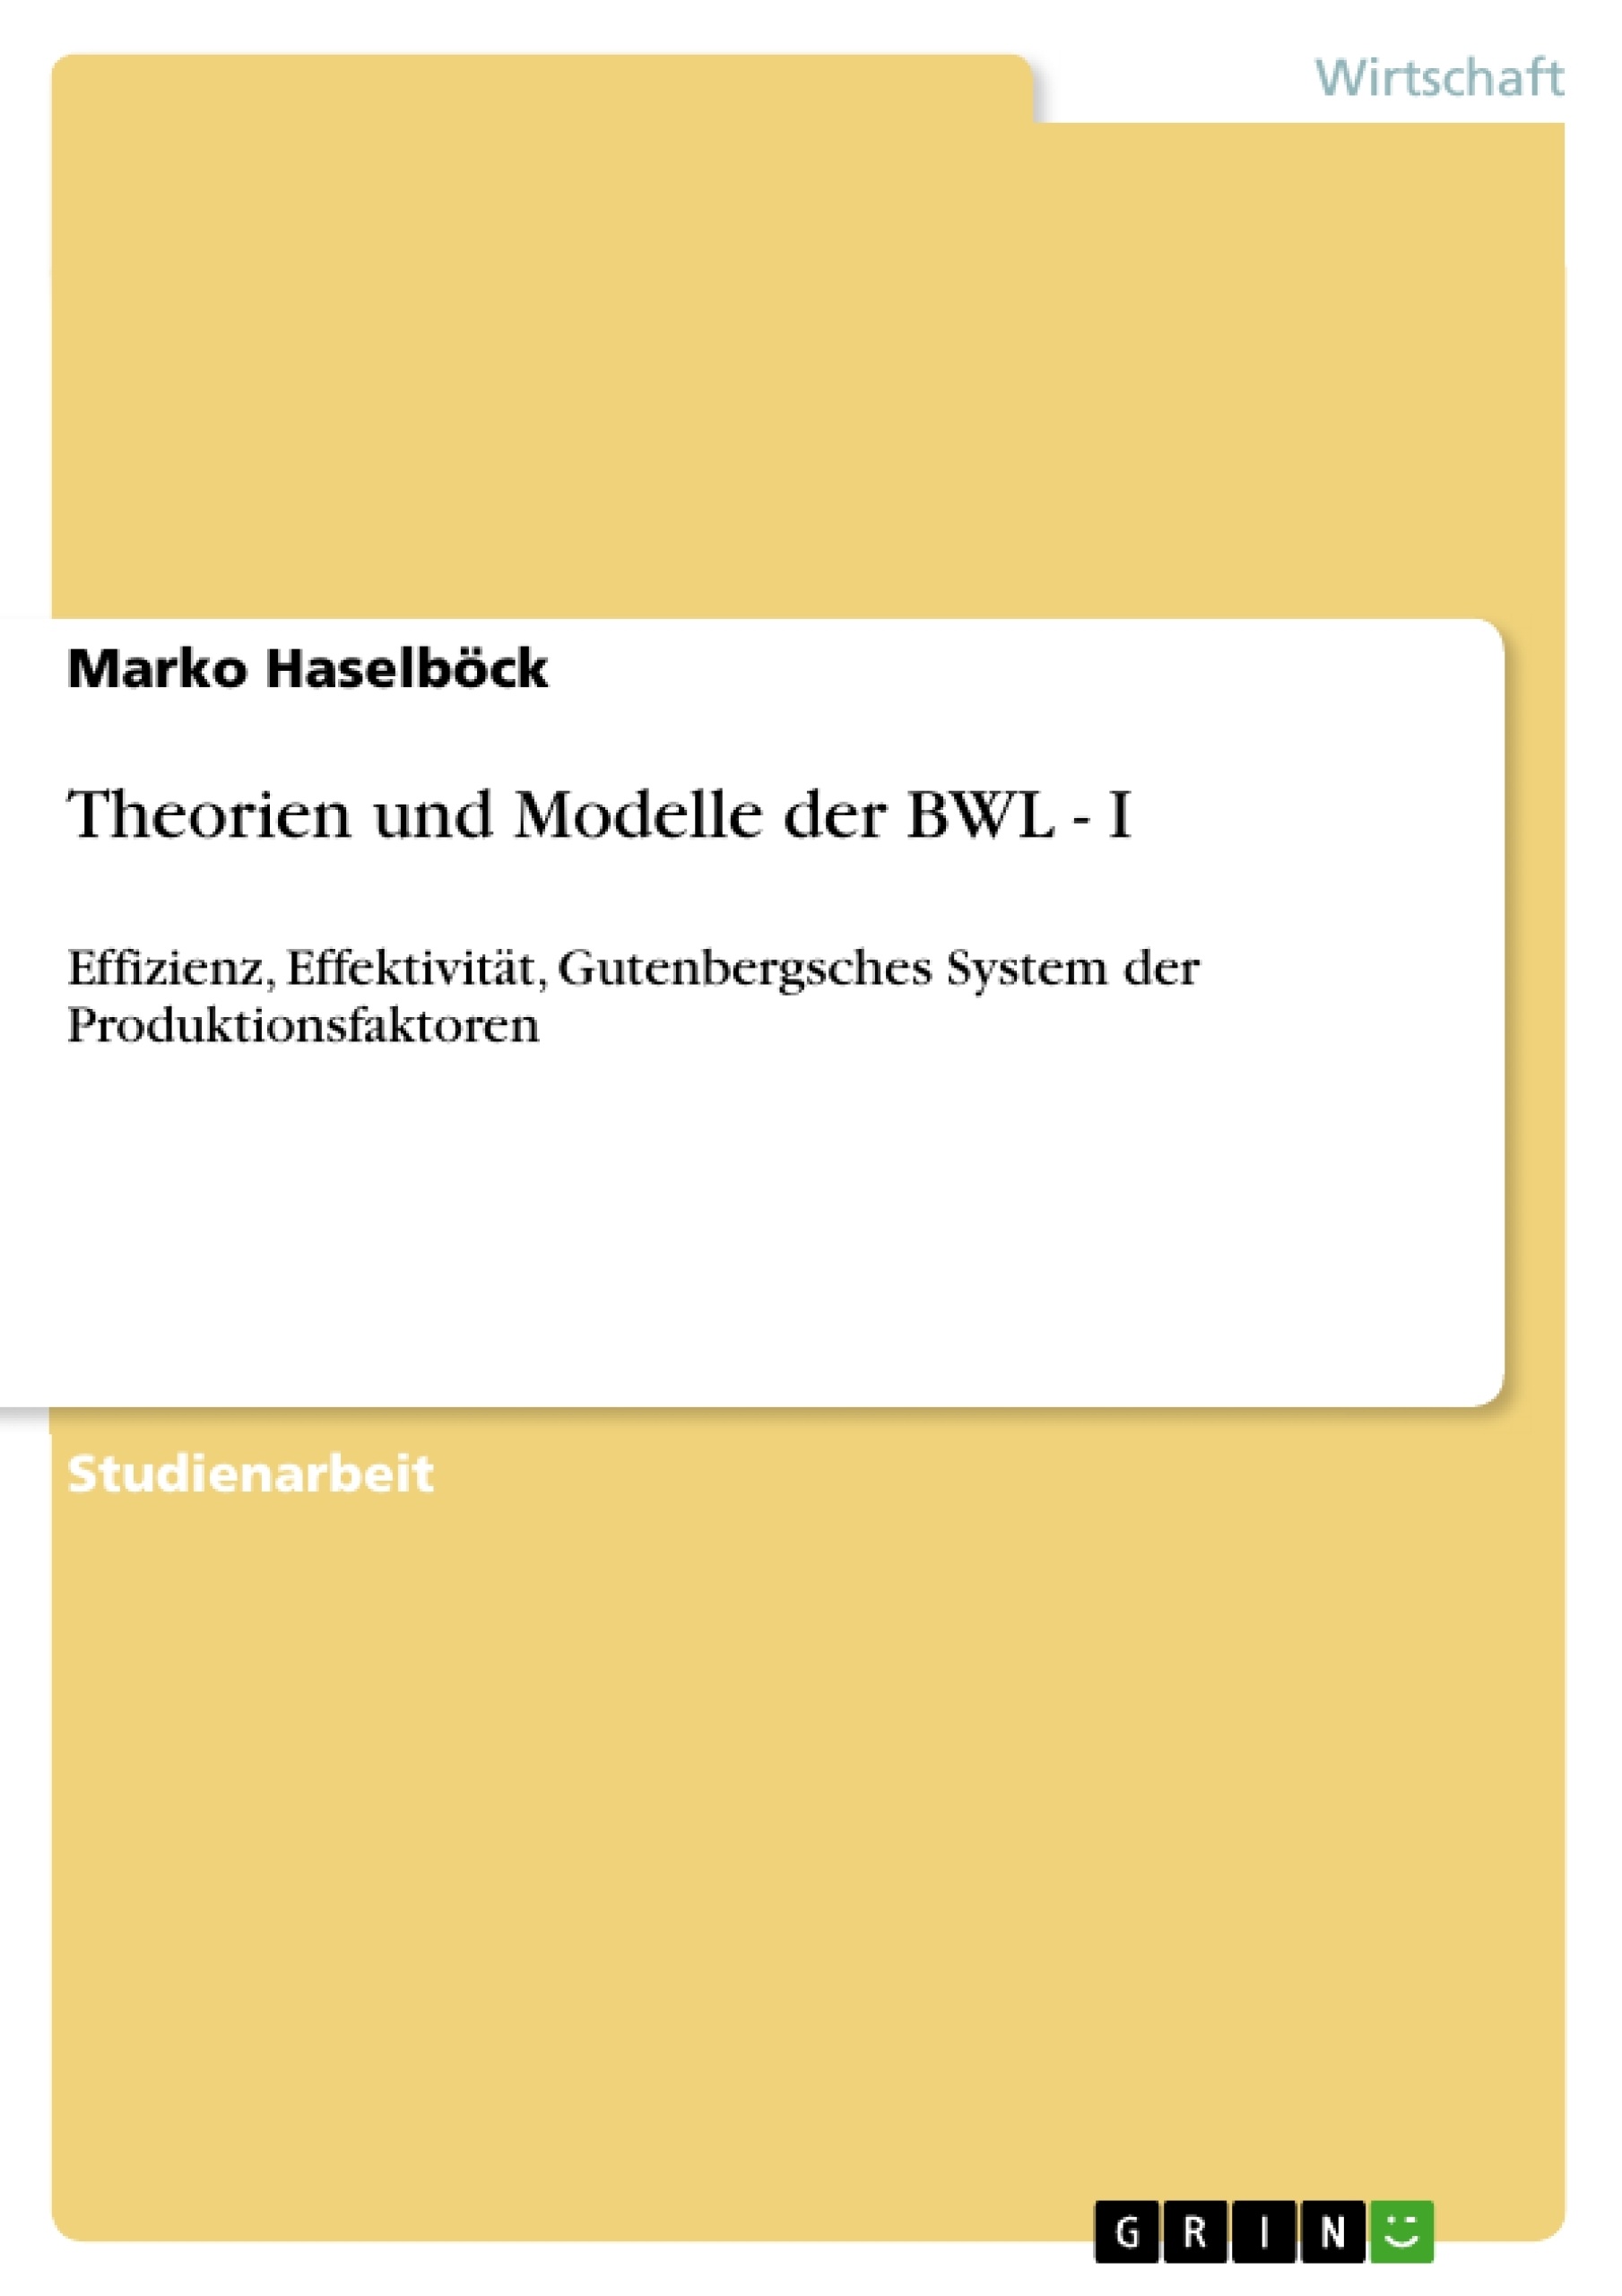 Title: Theorien und Modelle der BWL - I